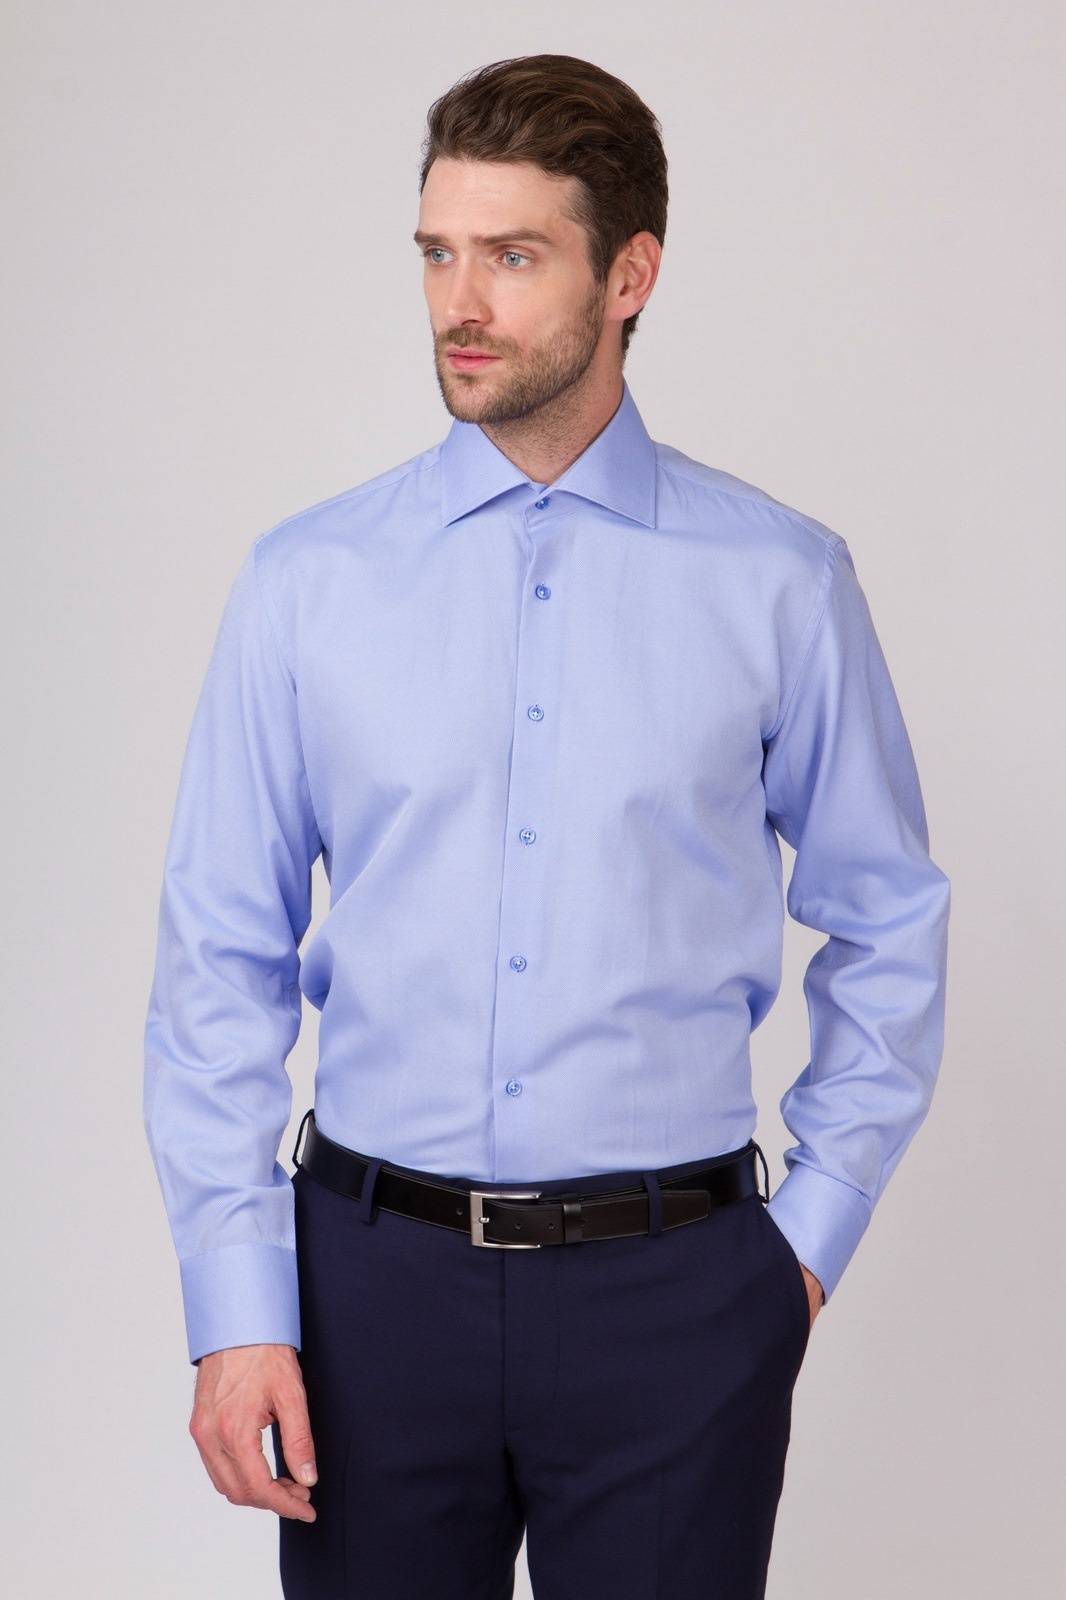 Классические рубашки – классическая мужская рубашка — формы, детали и качество